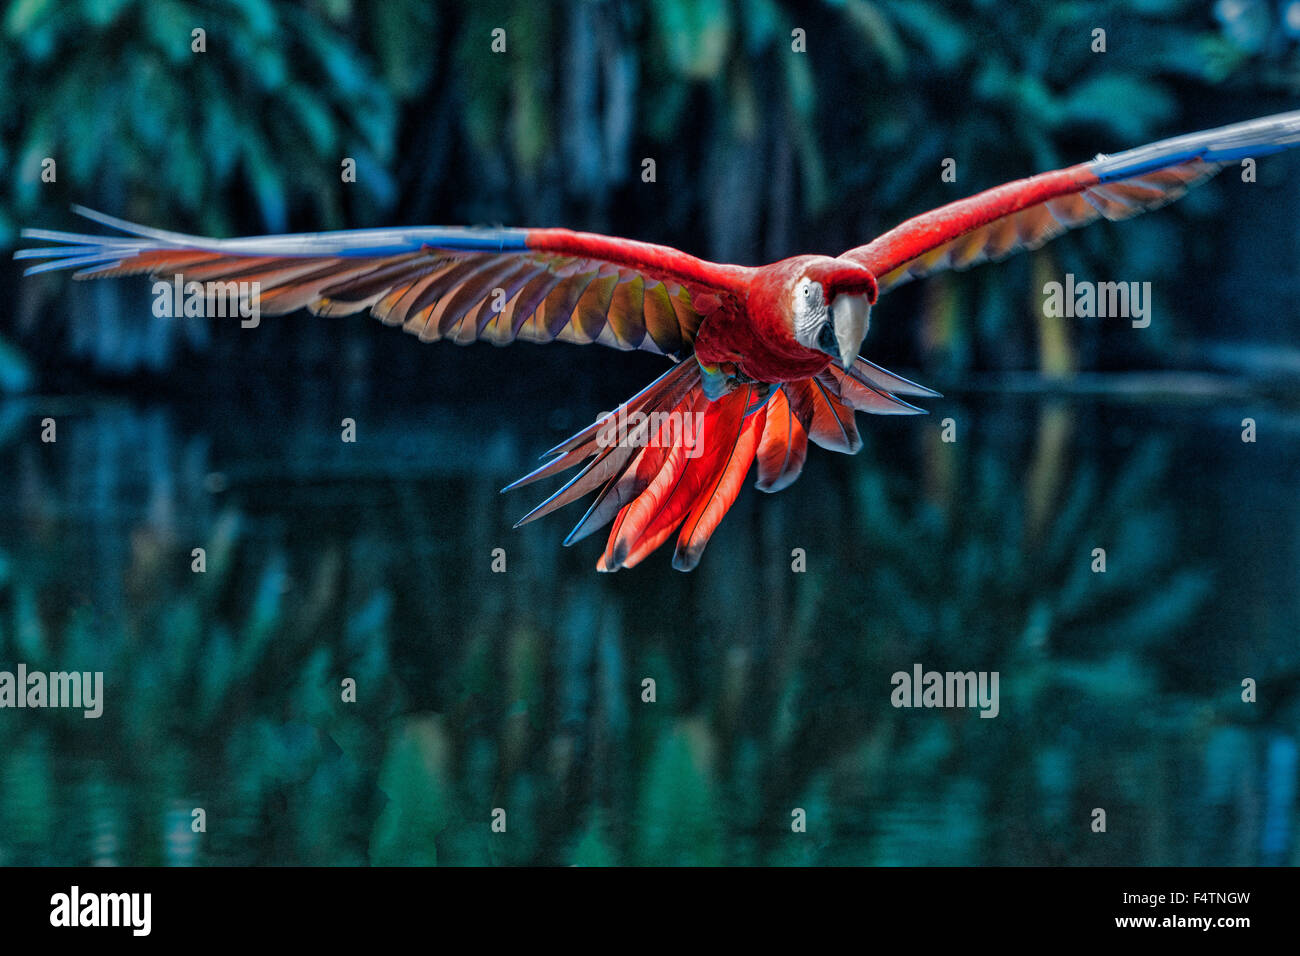 scarlet macaw, Ara macao, macaw, red, flying, bird Stock Photo